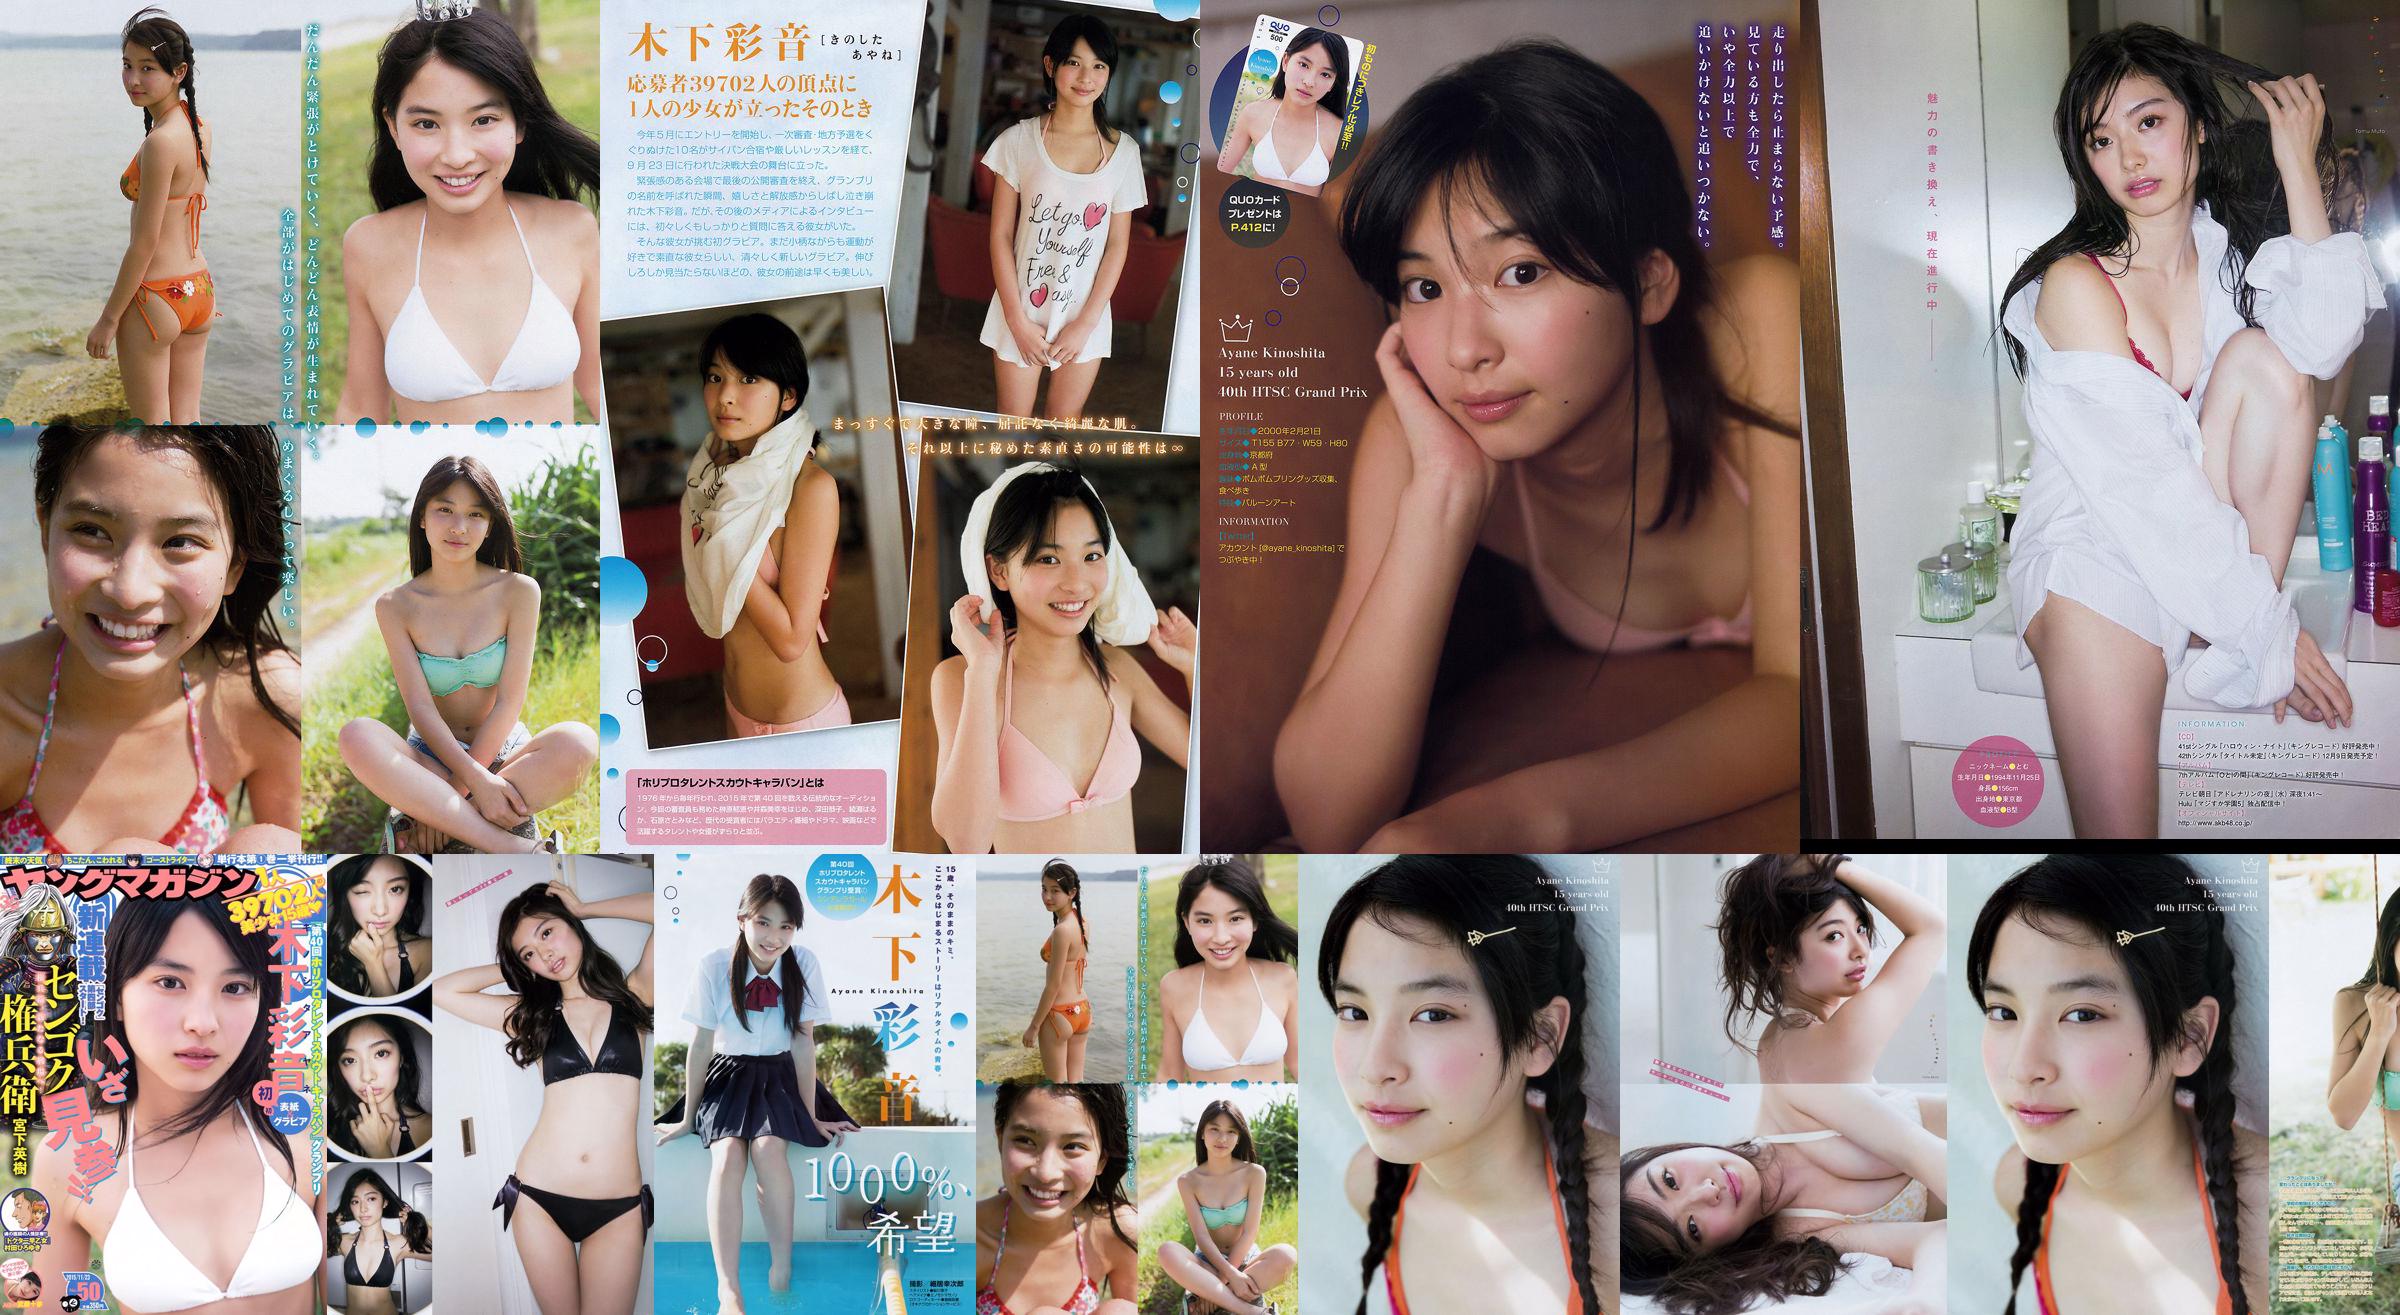 [Tạp chí trẻ Ayane Kinoshita Tomu Muto] Ảnh số 50 năm 2015 No.306644 Trang 1